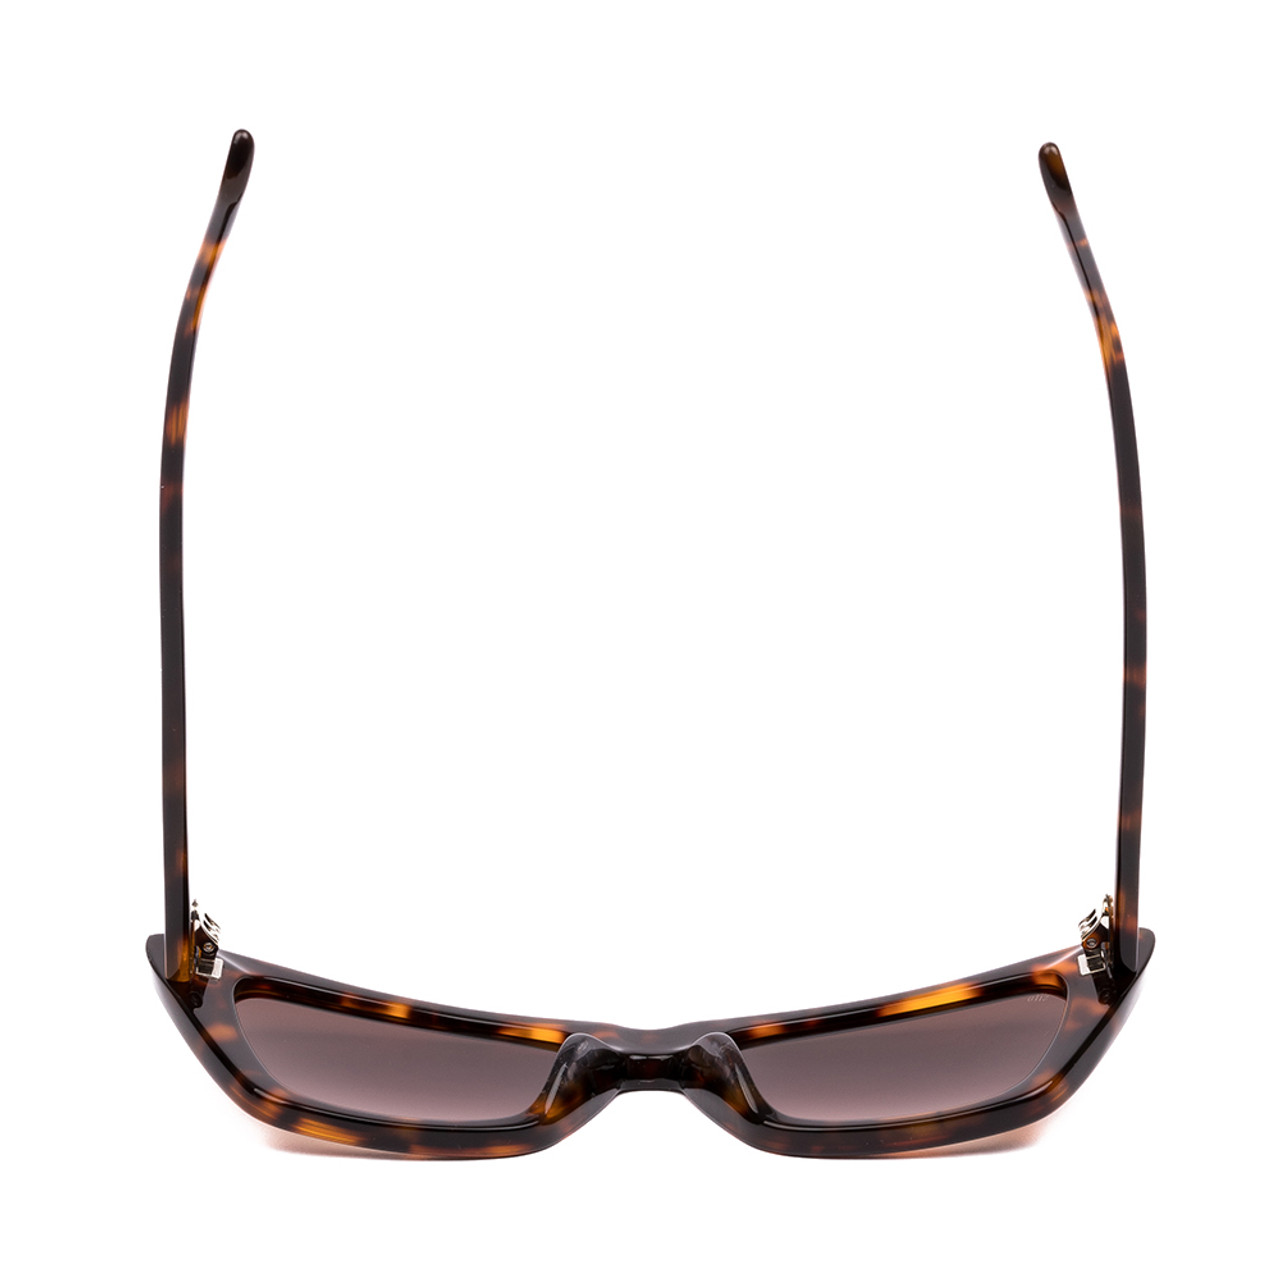 Top View of SITO SHADES WONDERLAND Women Cat Eye Sunglasses Honey Tortoise Havana/Brown 54mm